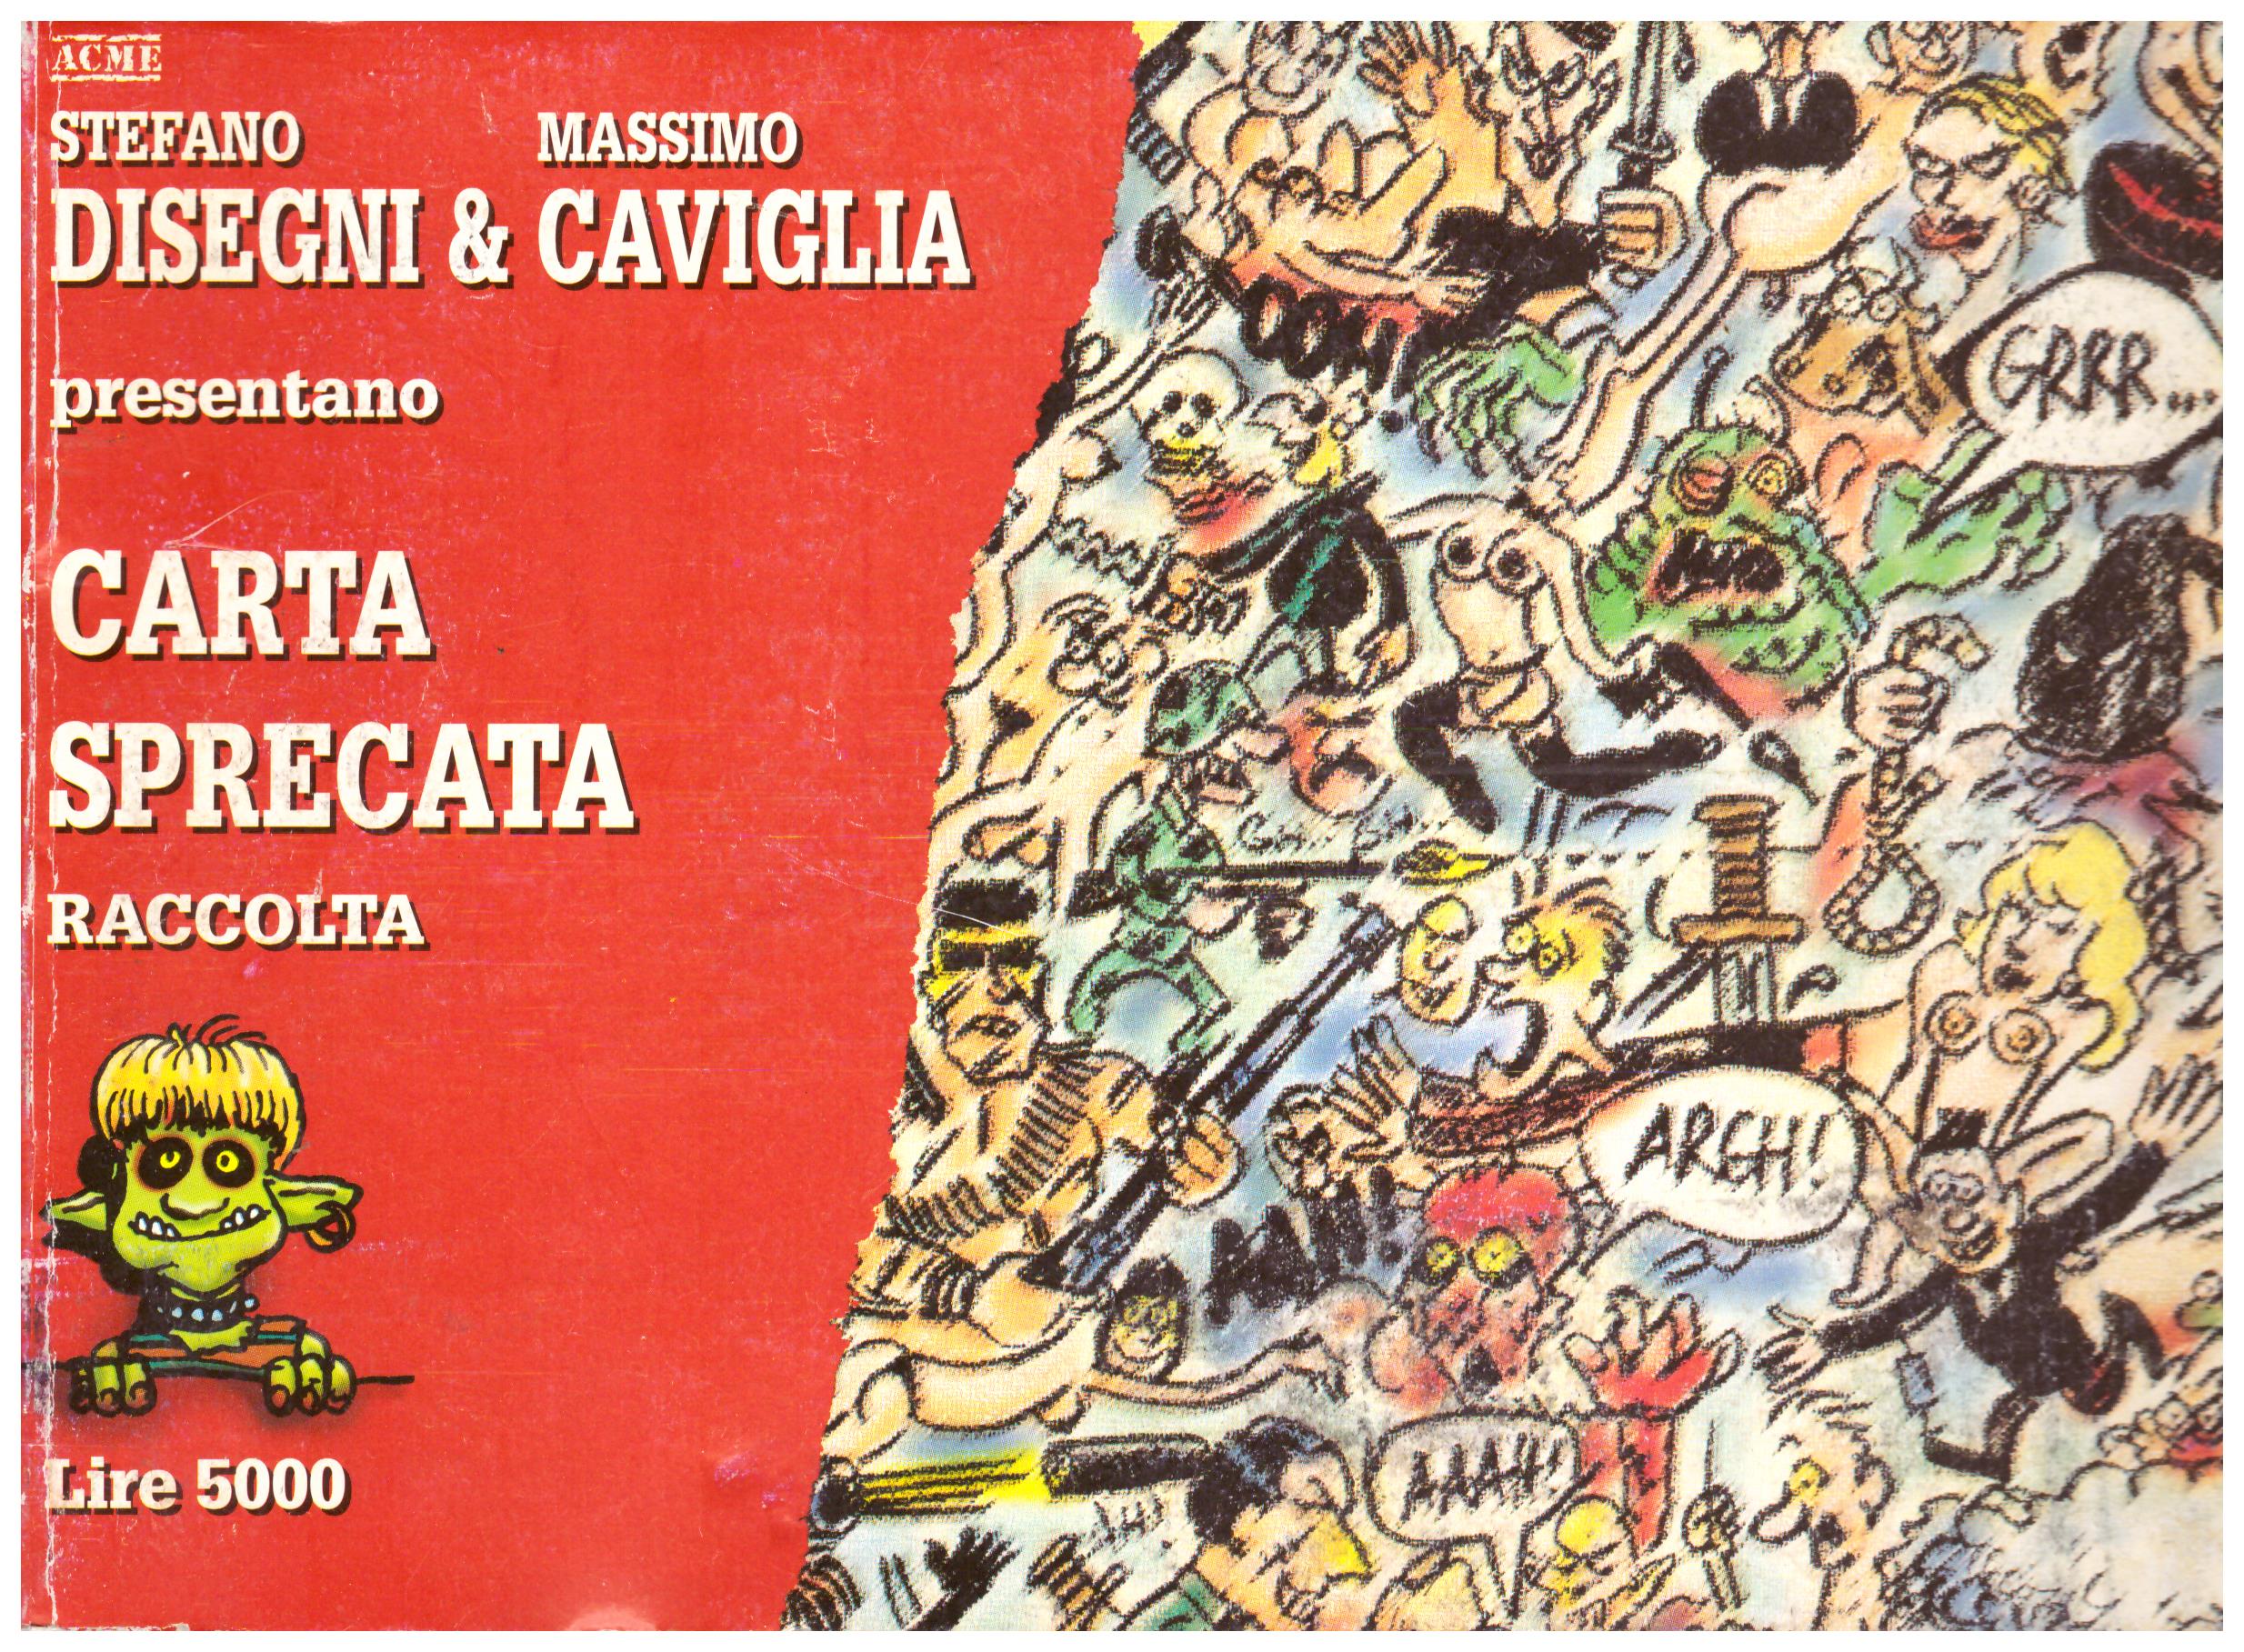 Titolo: Carta sprecata raccolta Autore : Stefano Disegni, Massimo Caviglia Editore: A.C.M.E